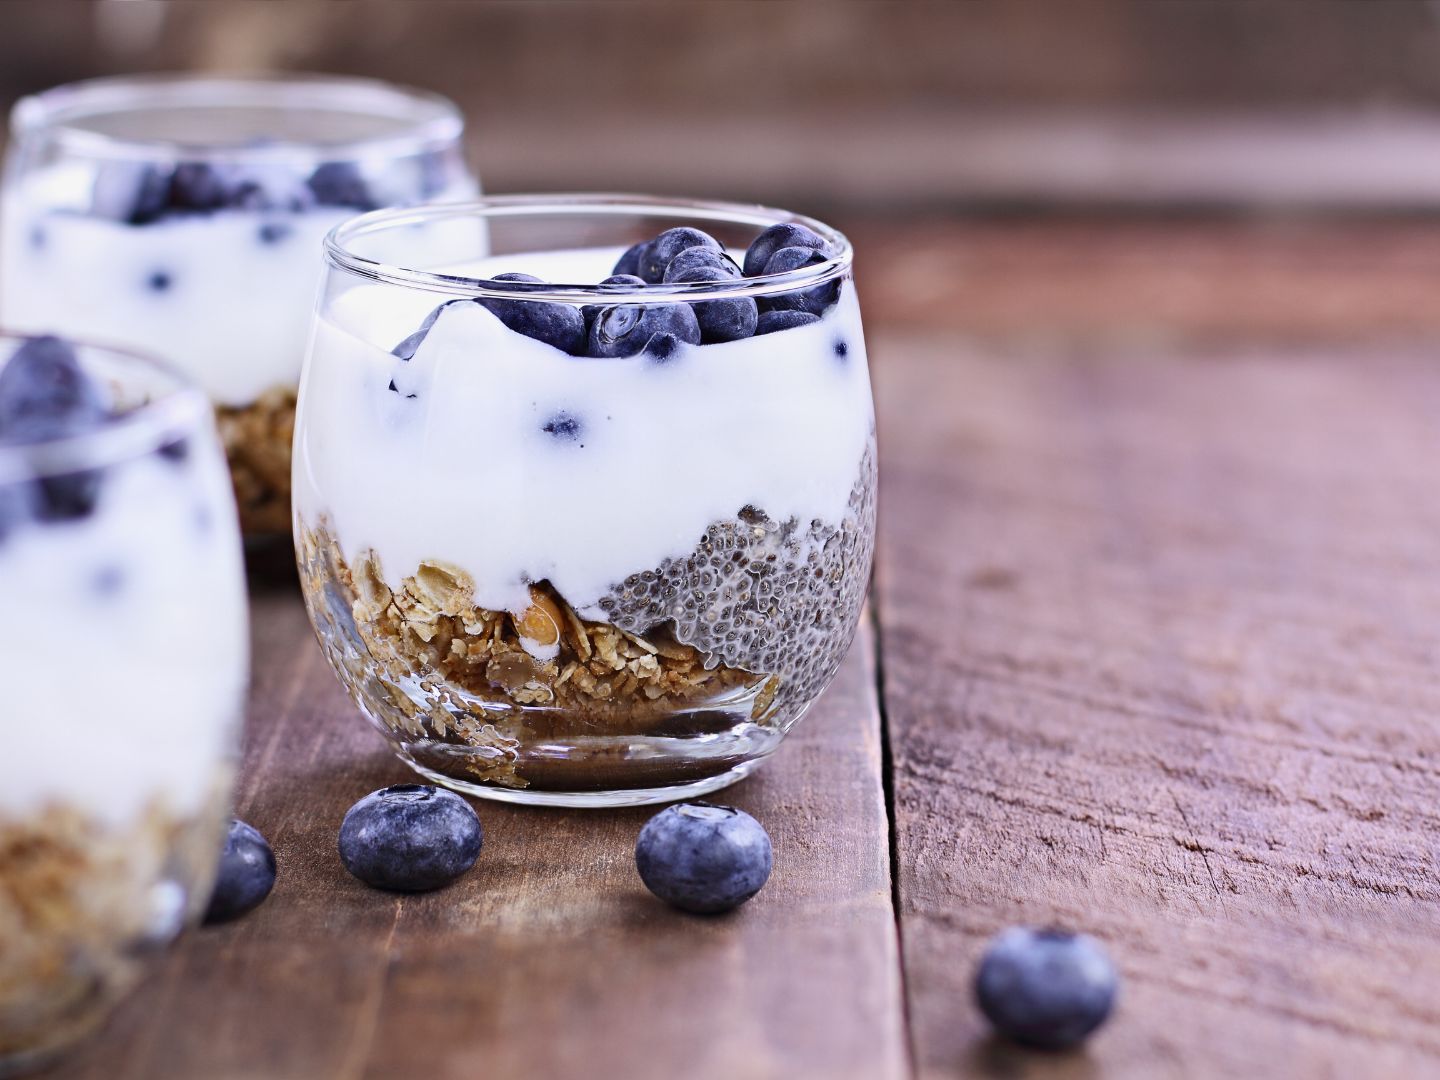 Hrana bogata probioticima - jogurt, chia sjemenke, borovnice i orasi posluženi u čaši